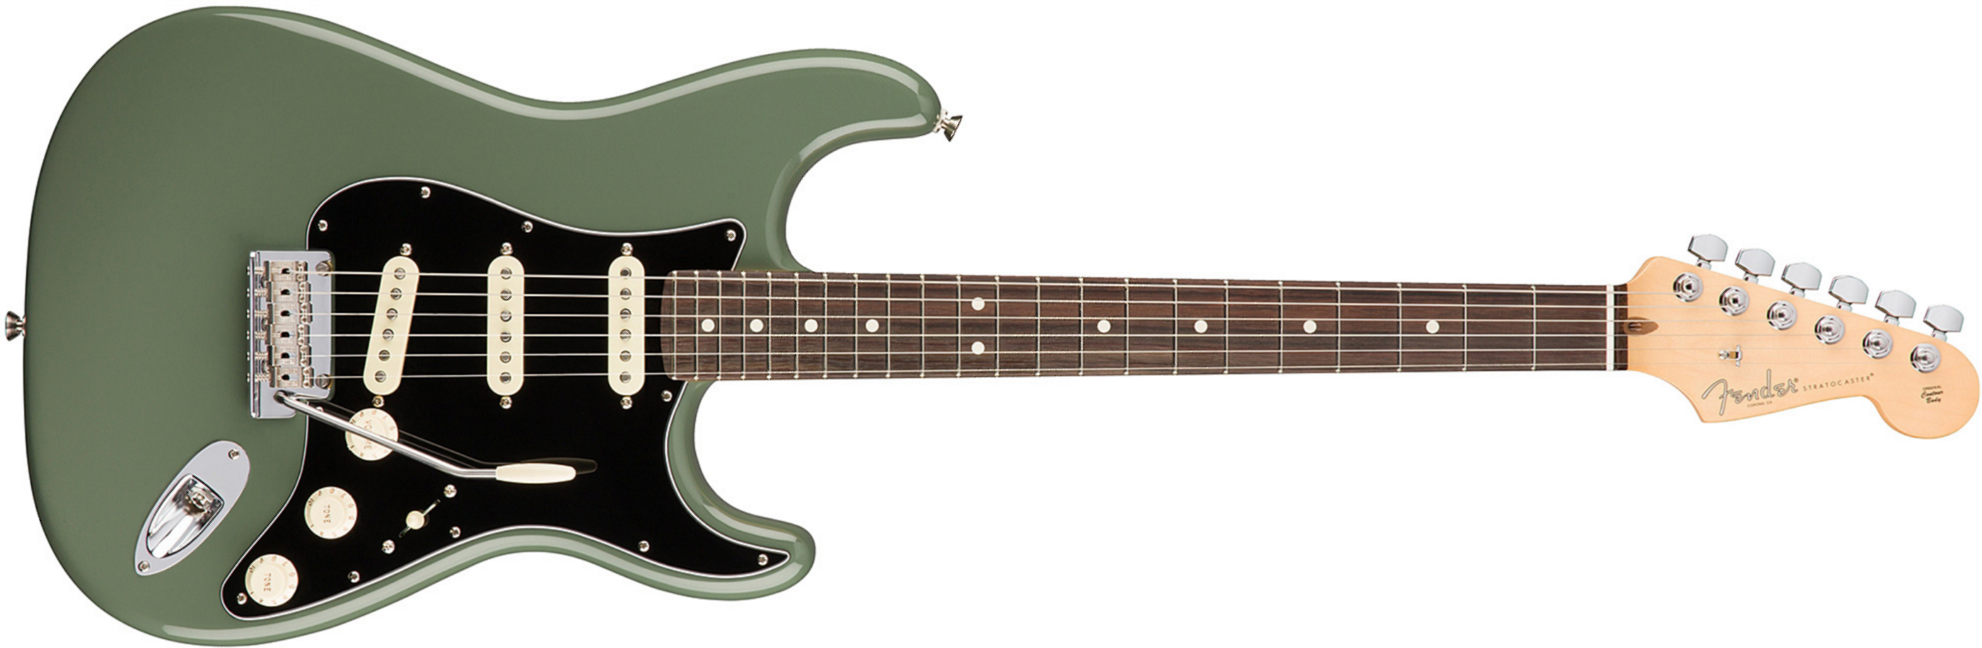 Fender Strat American Professional 2017 3s Usa Rw - Antique Olive - Elektrische gitaar in Str-vorm - Main picture